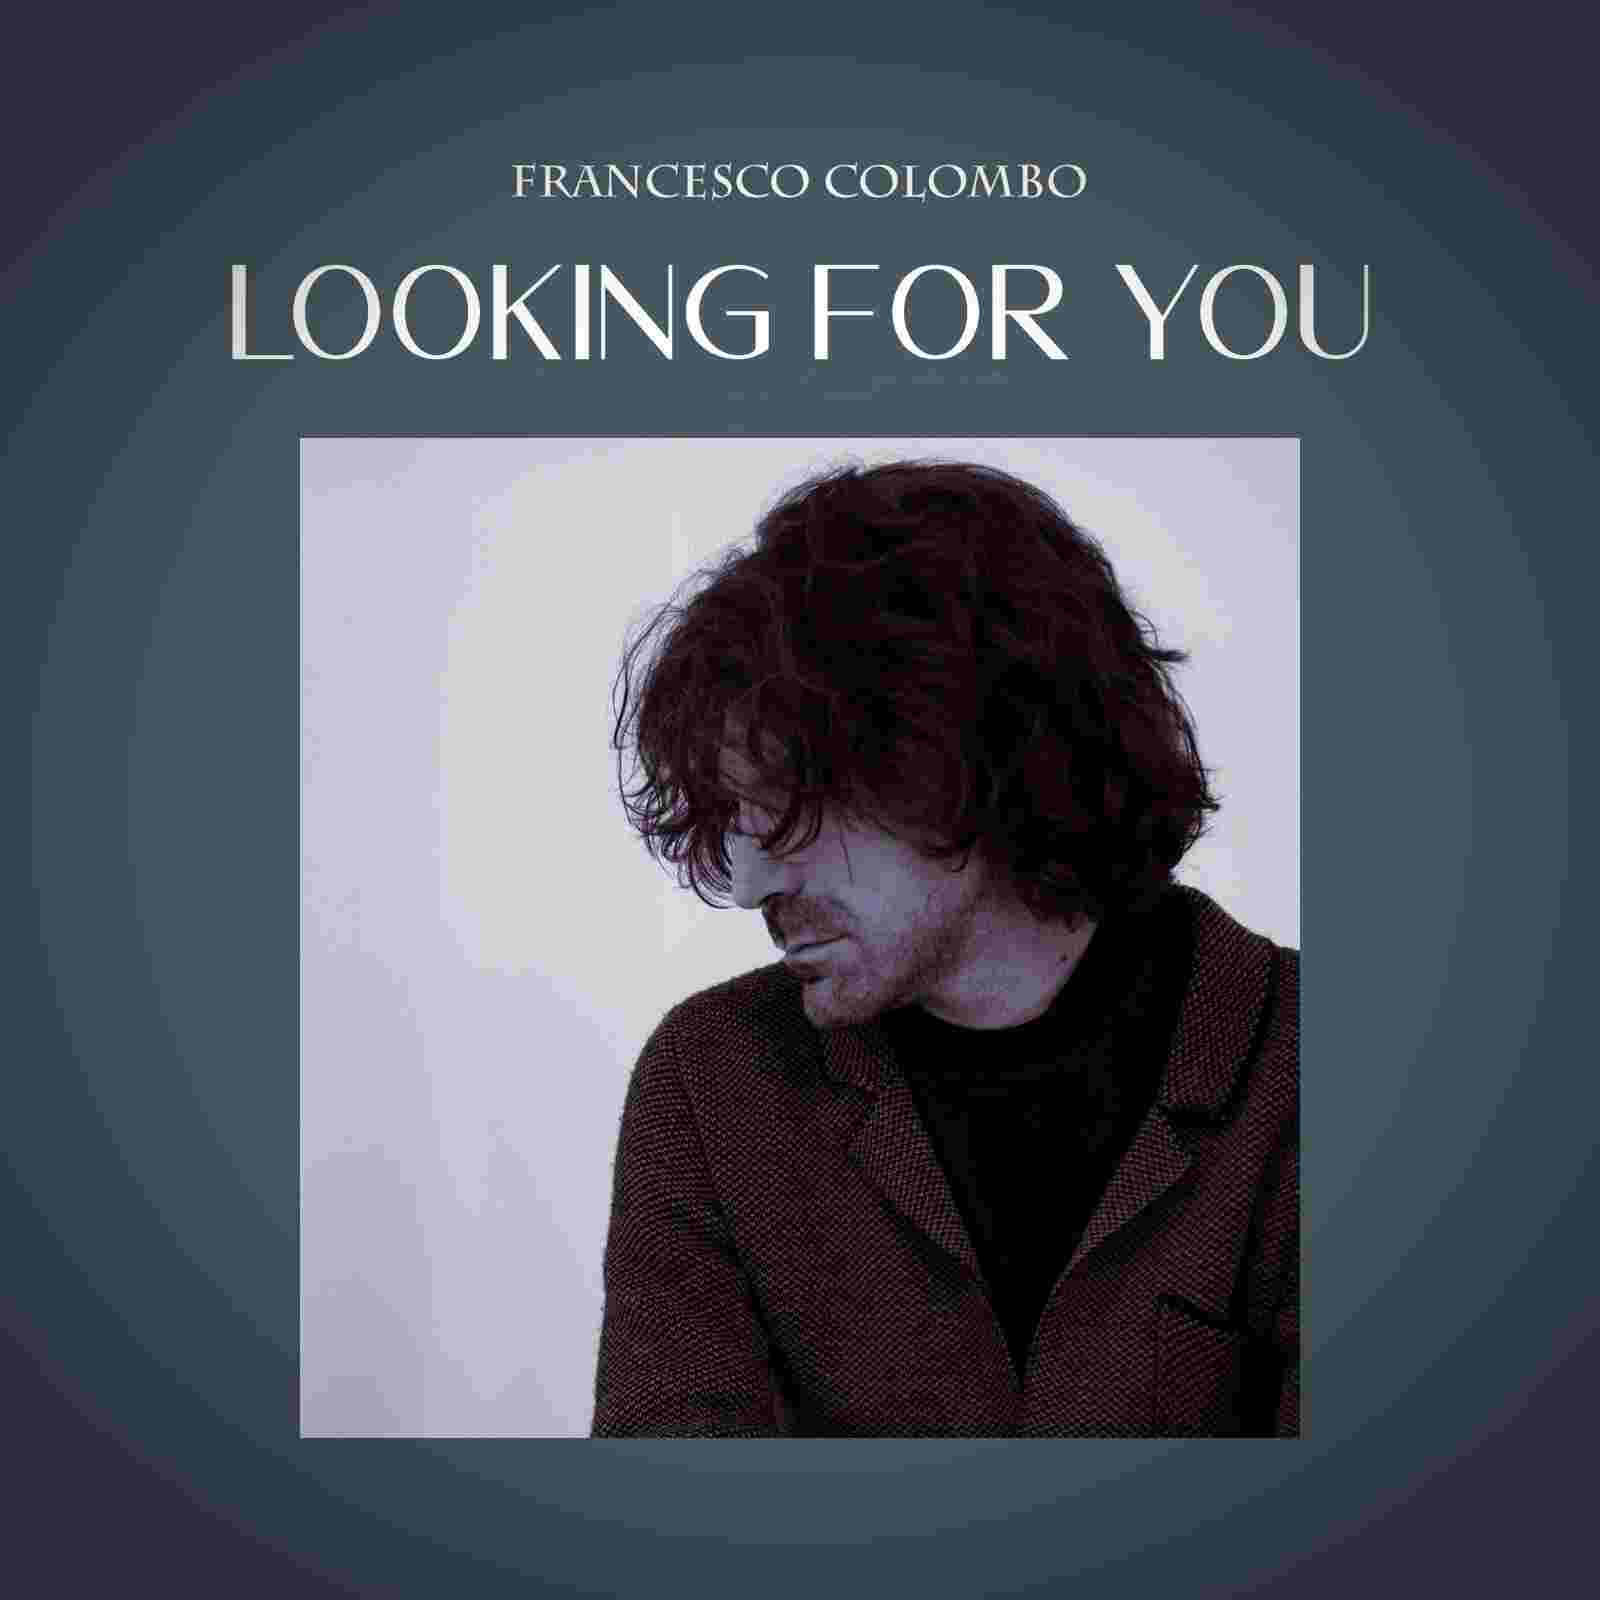 FRANCESCO COLOMBO: “Looking for you” il nuovo brano del chitarrista, compositore e cantautore di varese